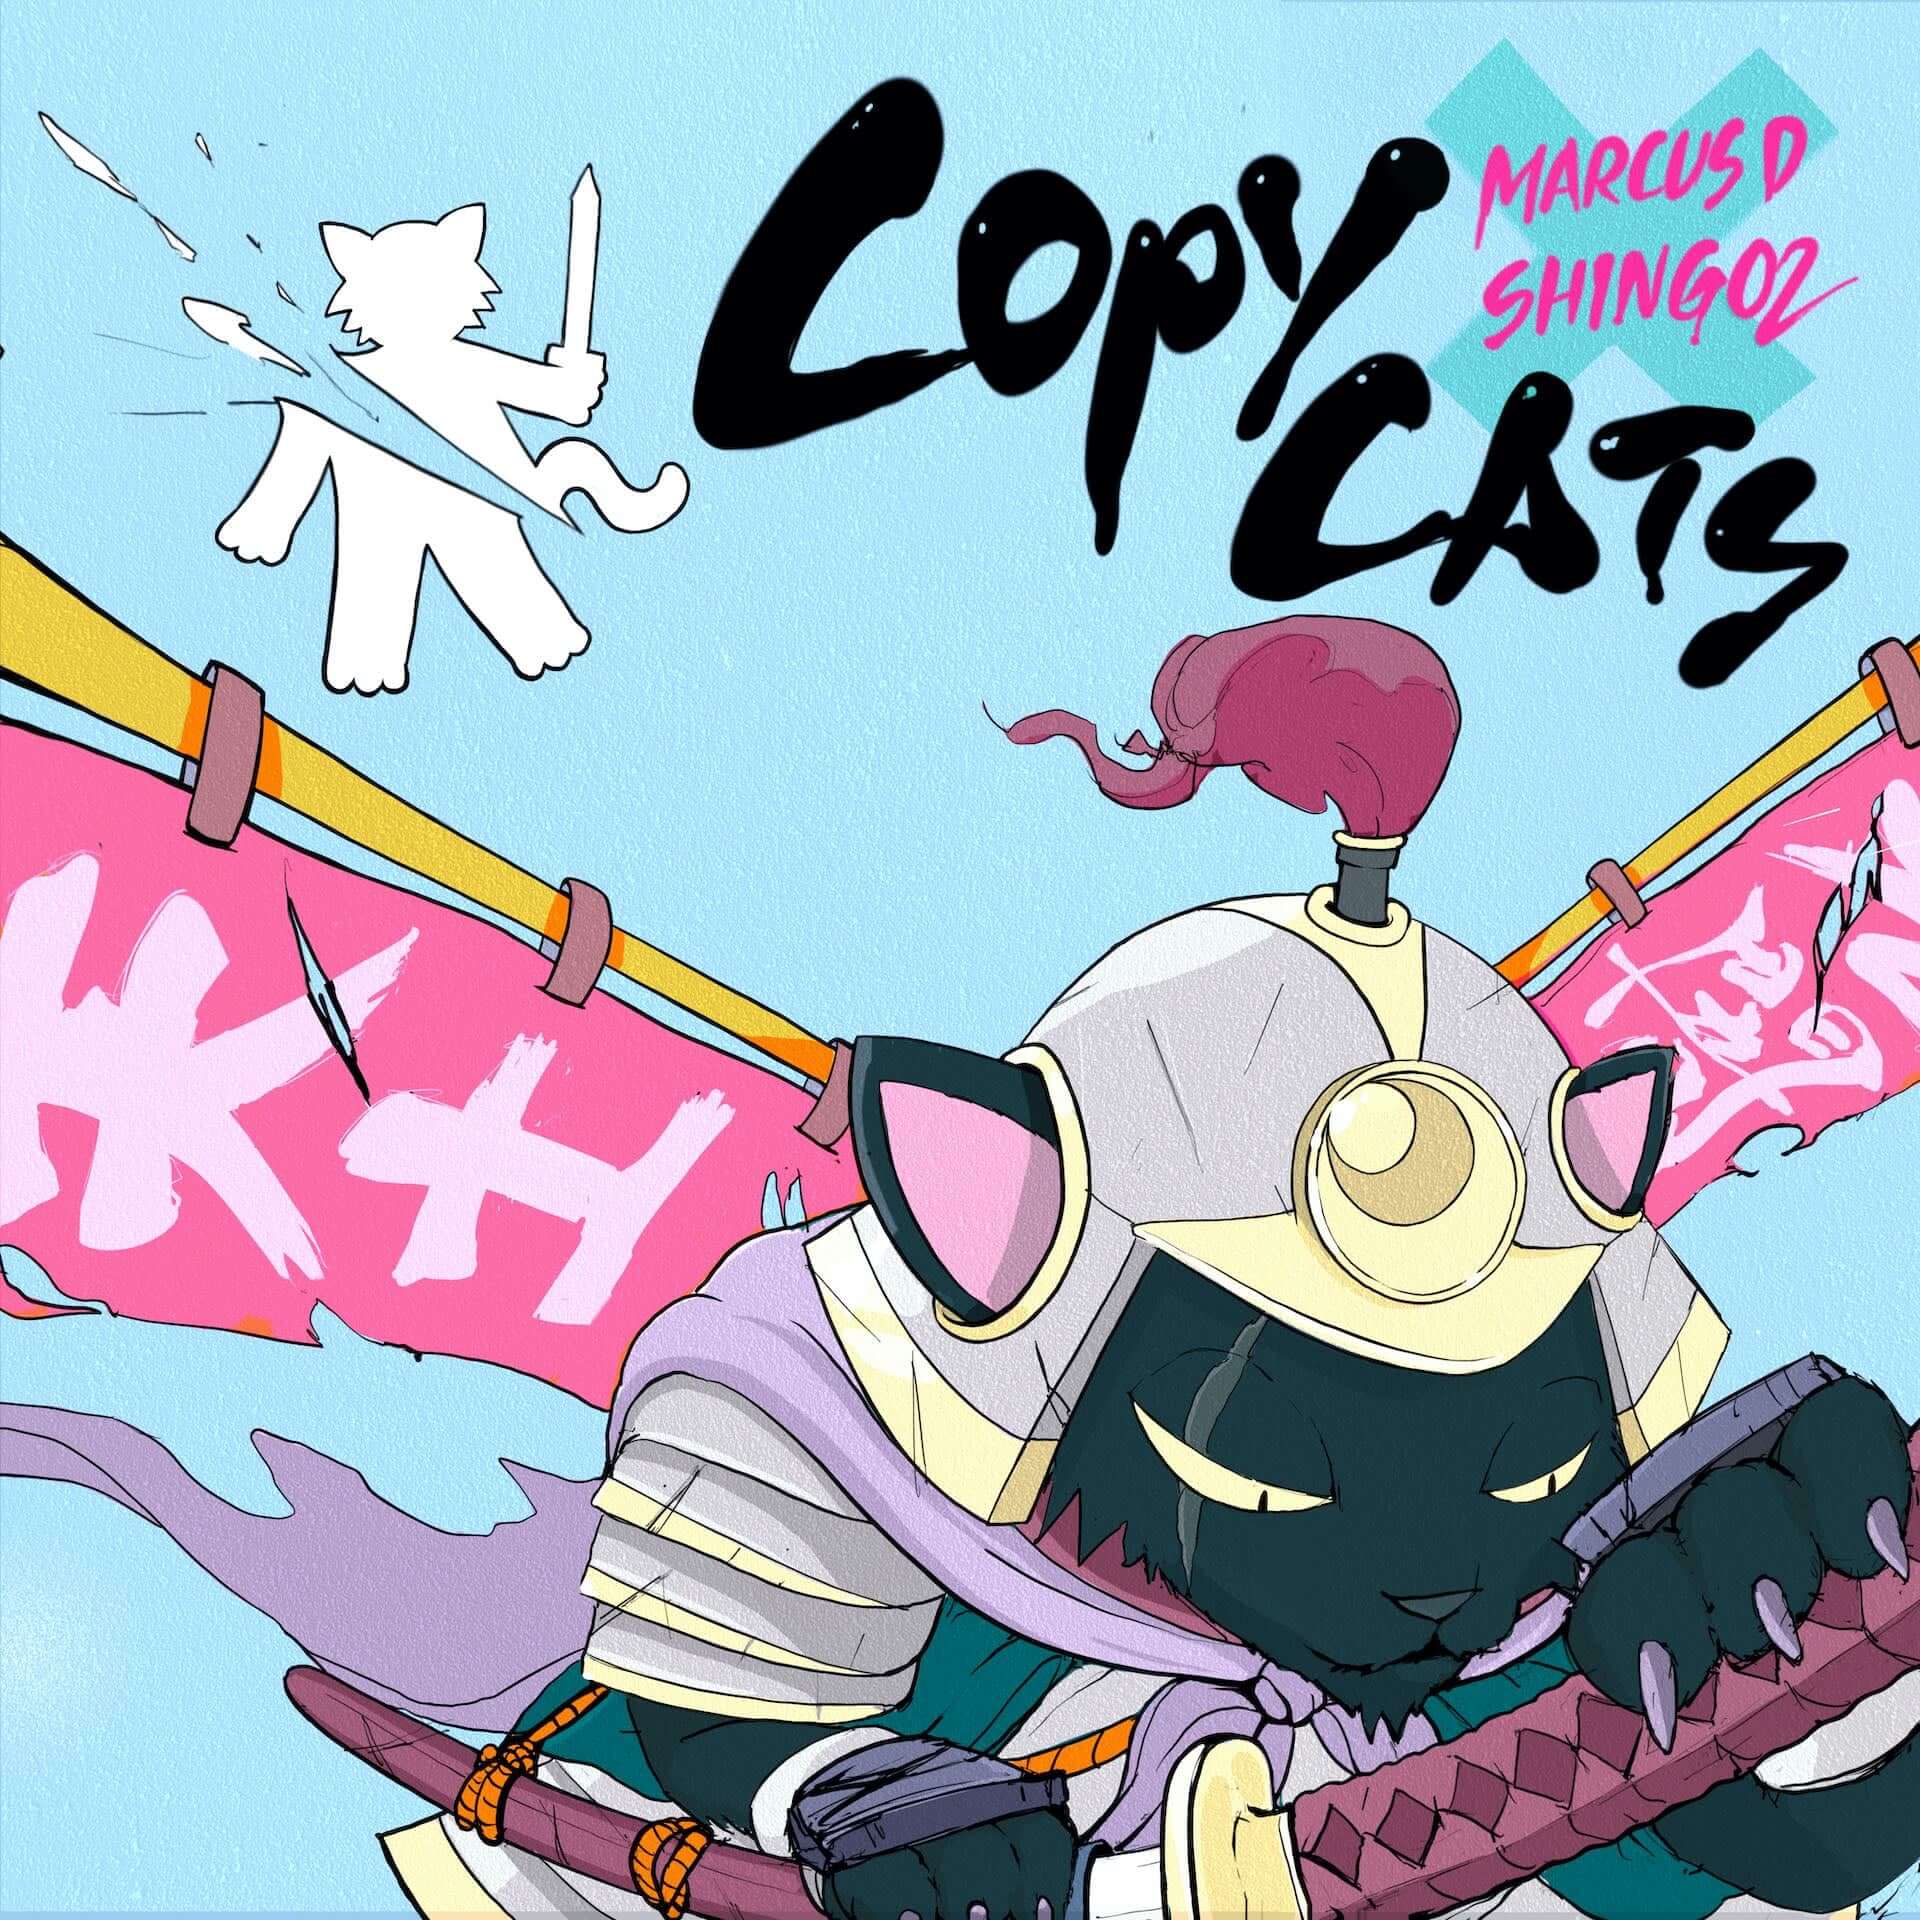 Marcus DとShing02によるコラボ作品『Copycats』が発売決定！新曲の 